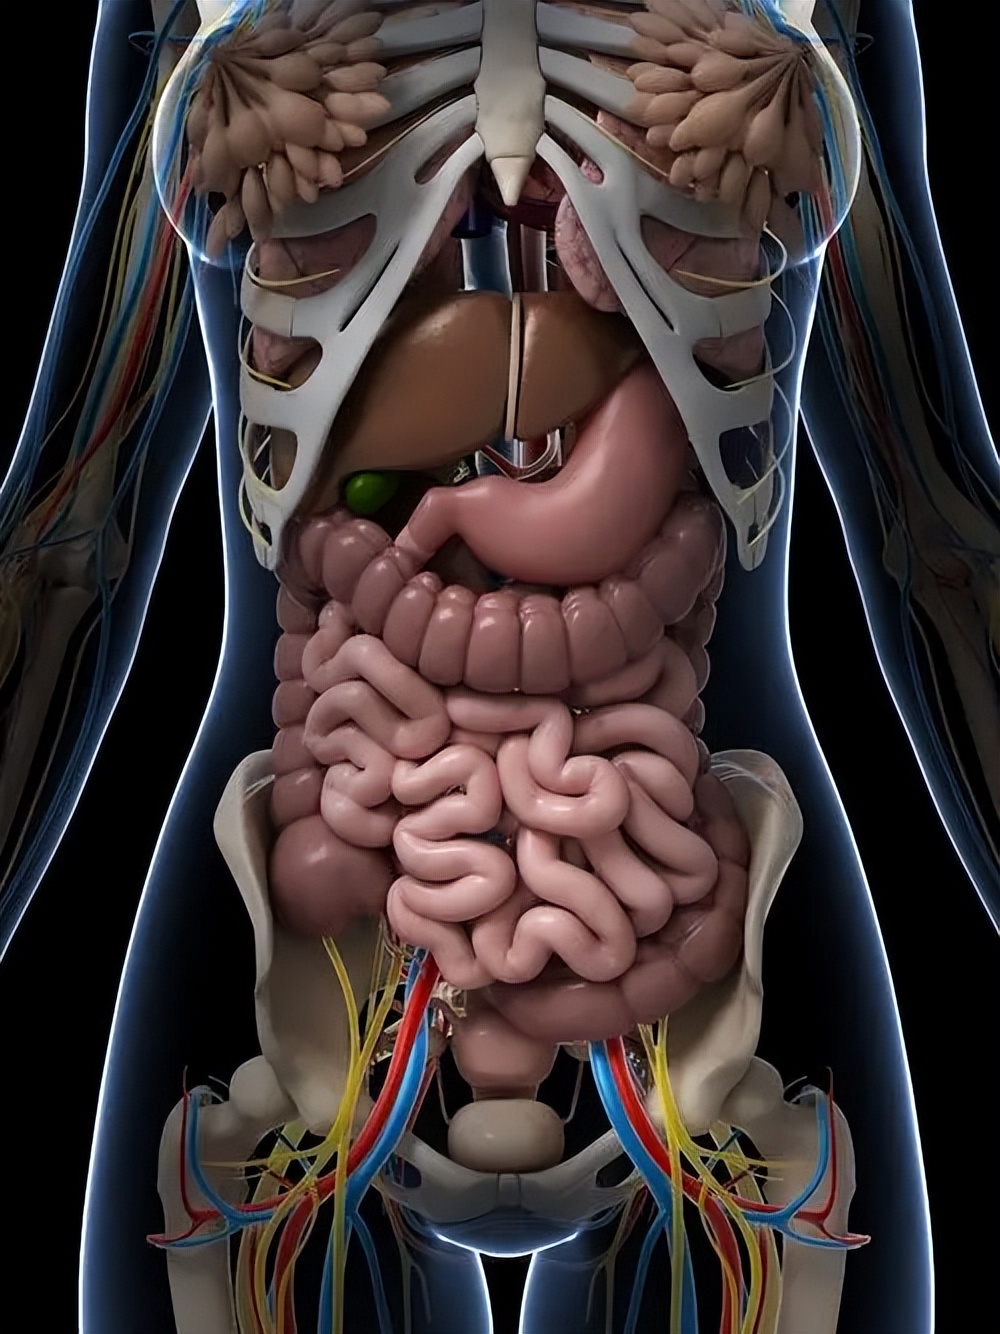 其次,在腹部存在大量的柔性结构,因此更容易出现扩张